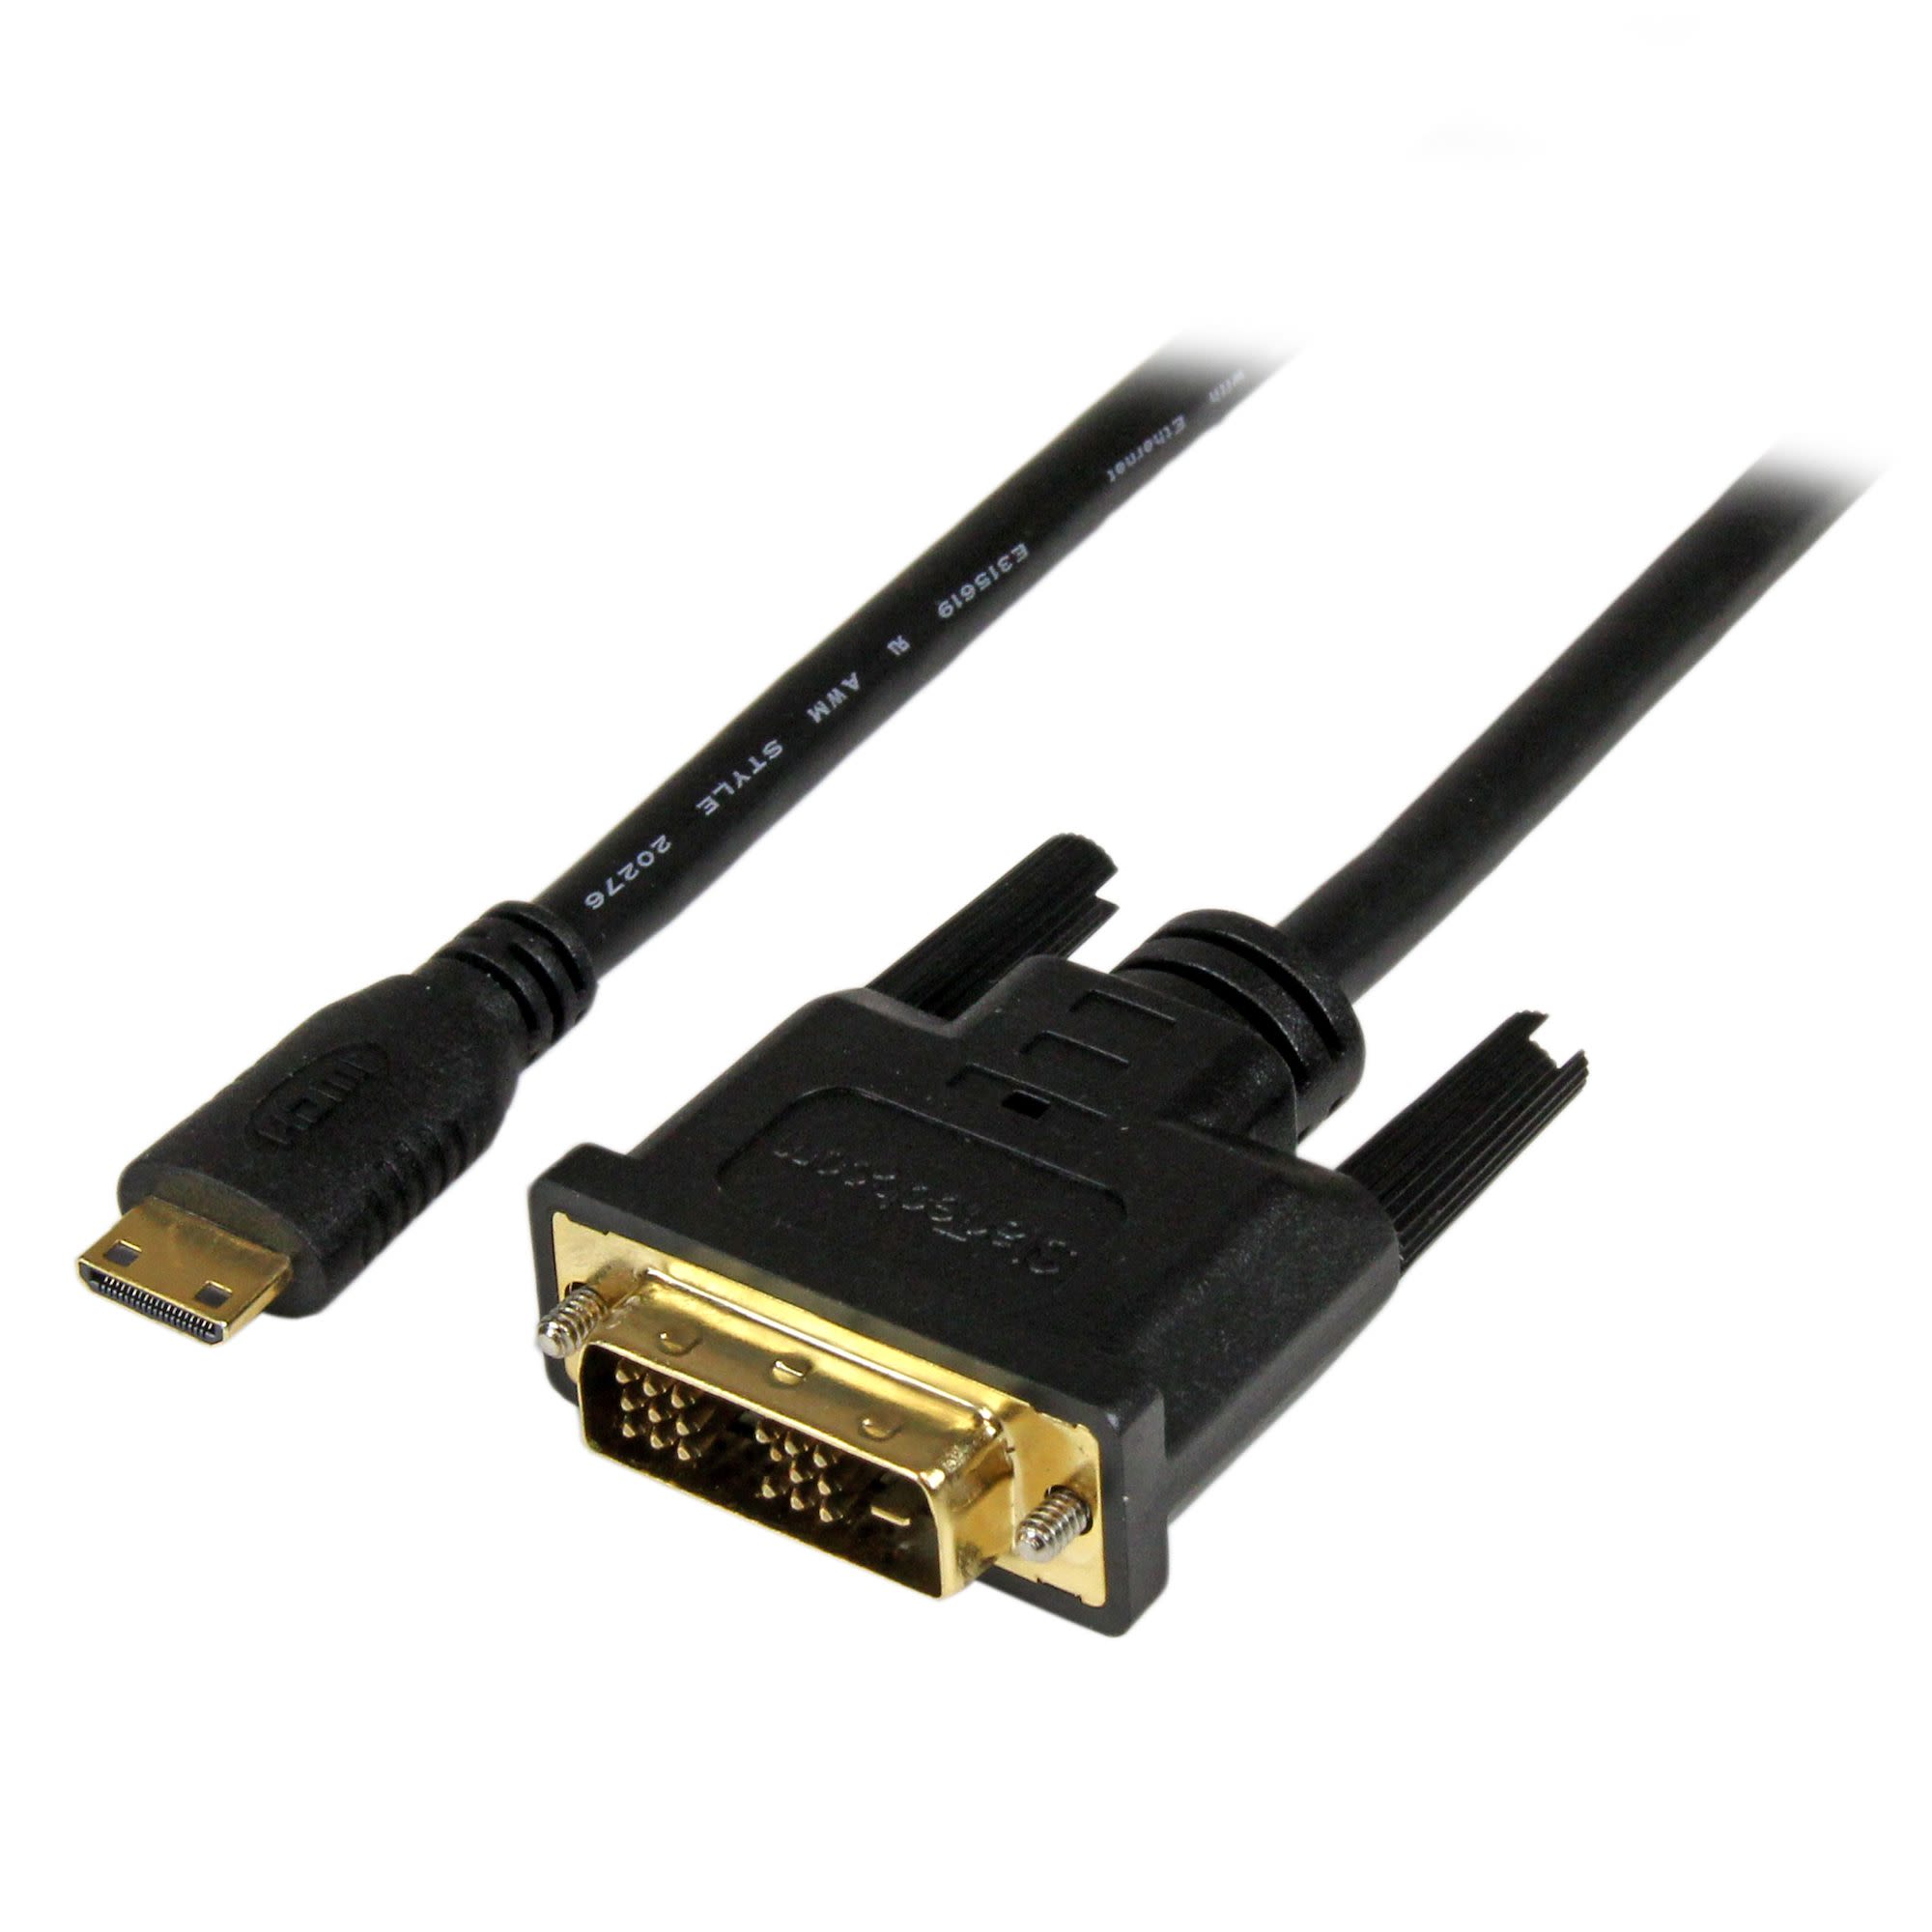 Cable HDMI Negro StarTech.com, con. A: Mini HDMI Macho, con. B: DVI-D Macho, long. 3m